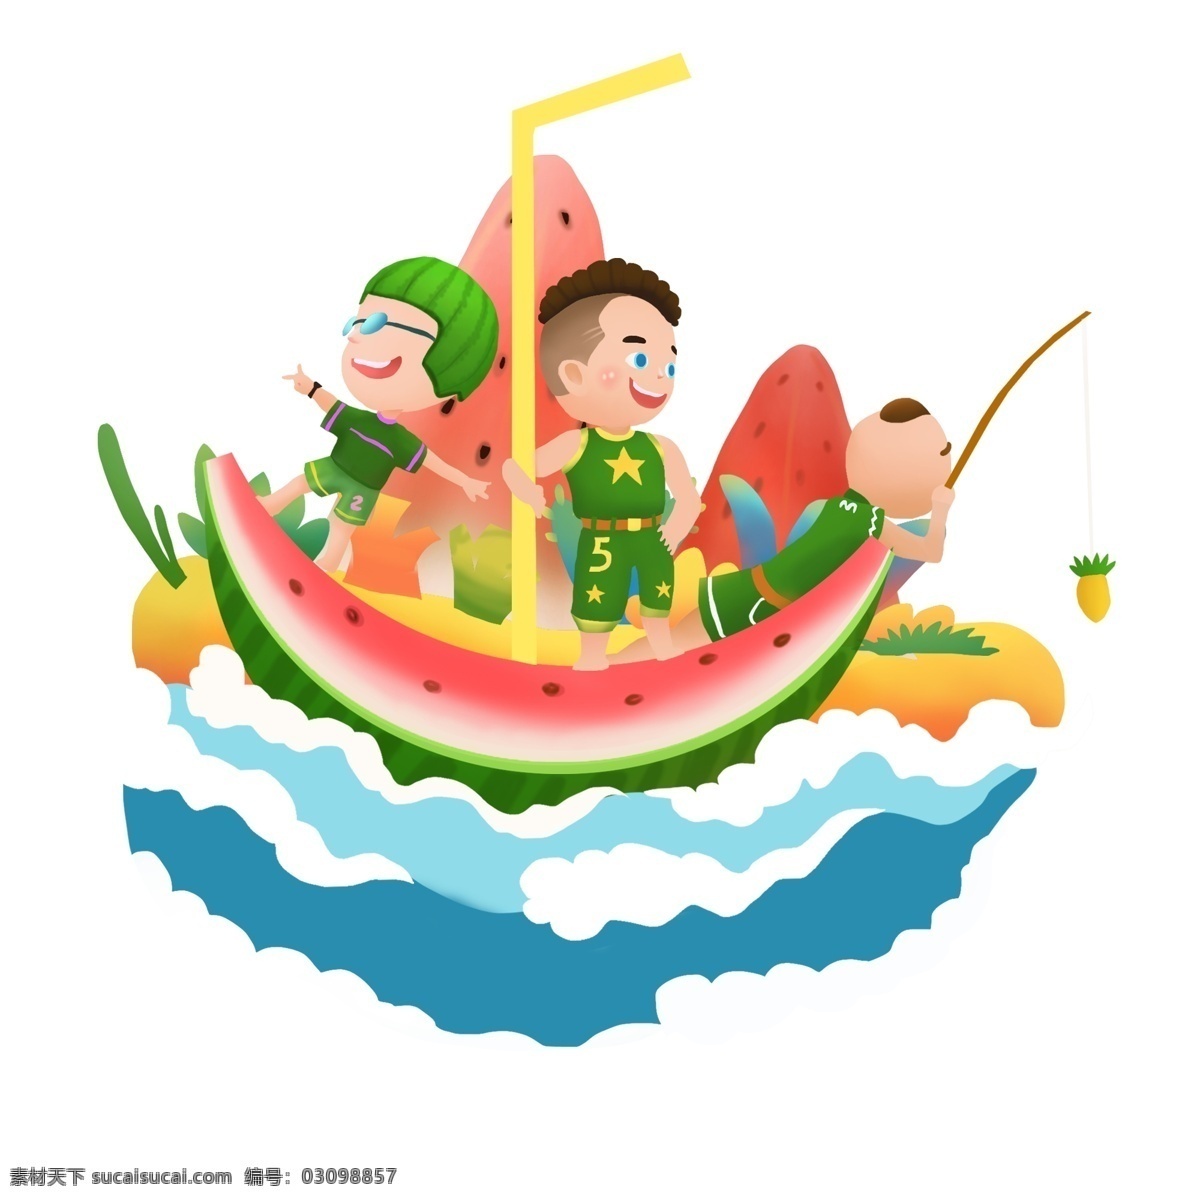 商用 高清 手绘 立夏 创意 西瓜 凉爽 浪 可商用 儿童 卡通形象 西瓜船 卡通 海浪